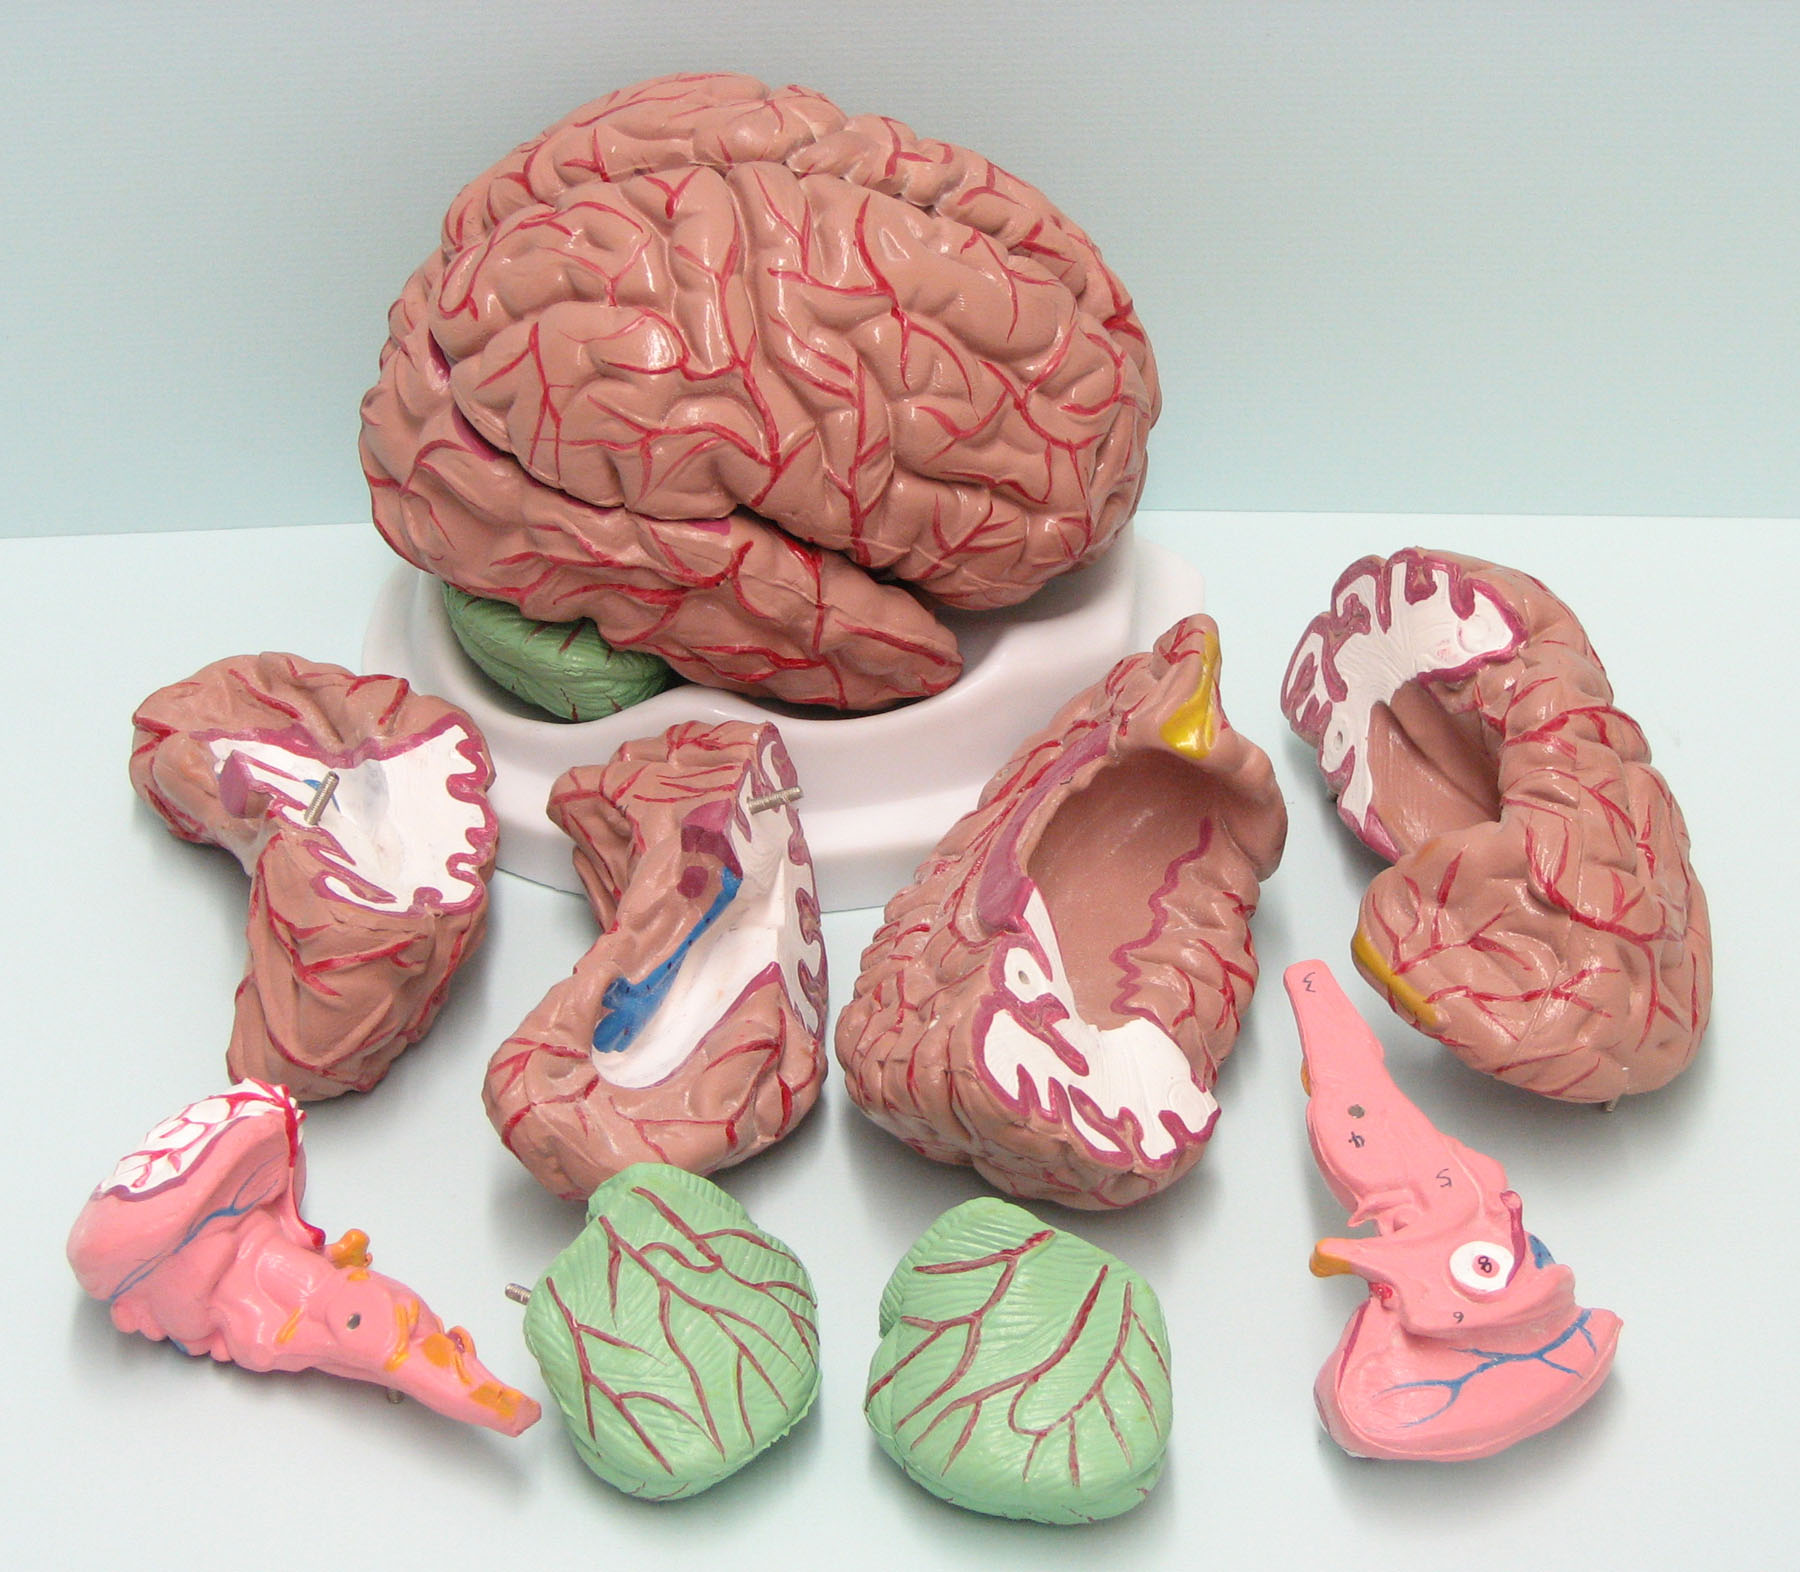 b3301-10 Human Brain 8 Parts